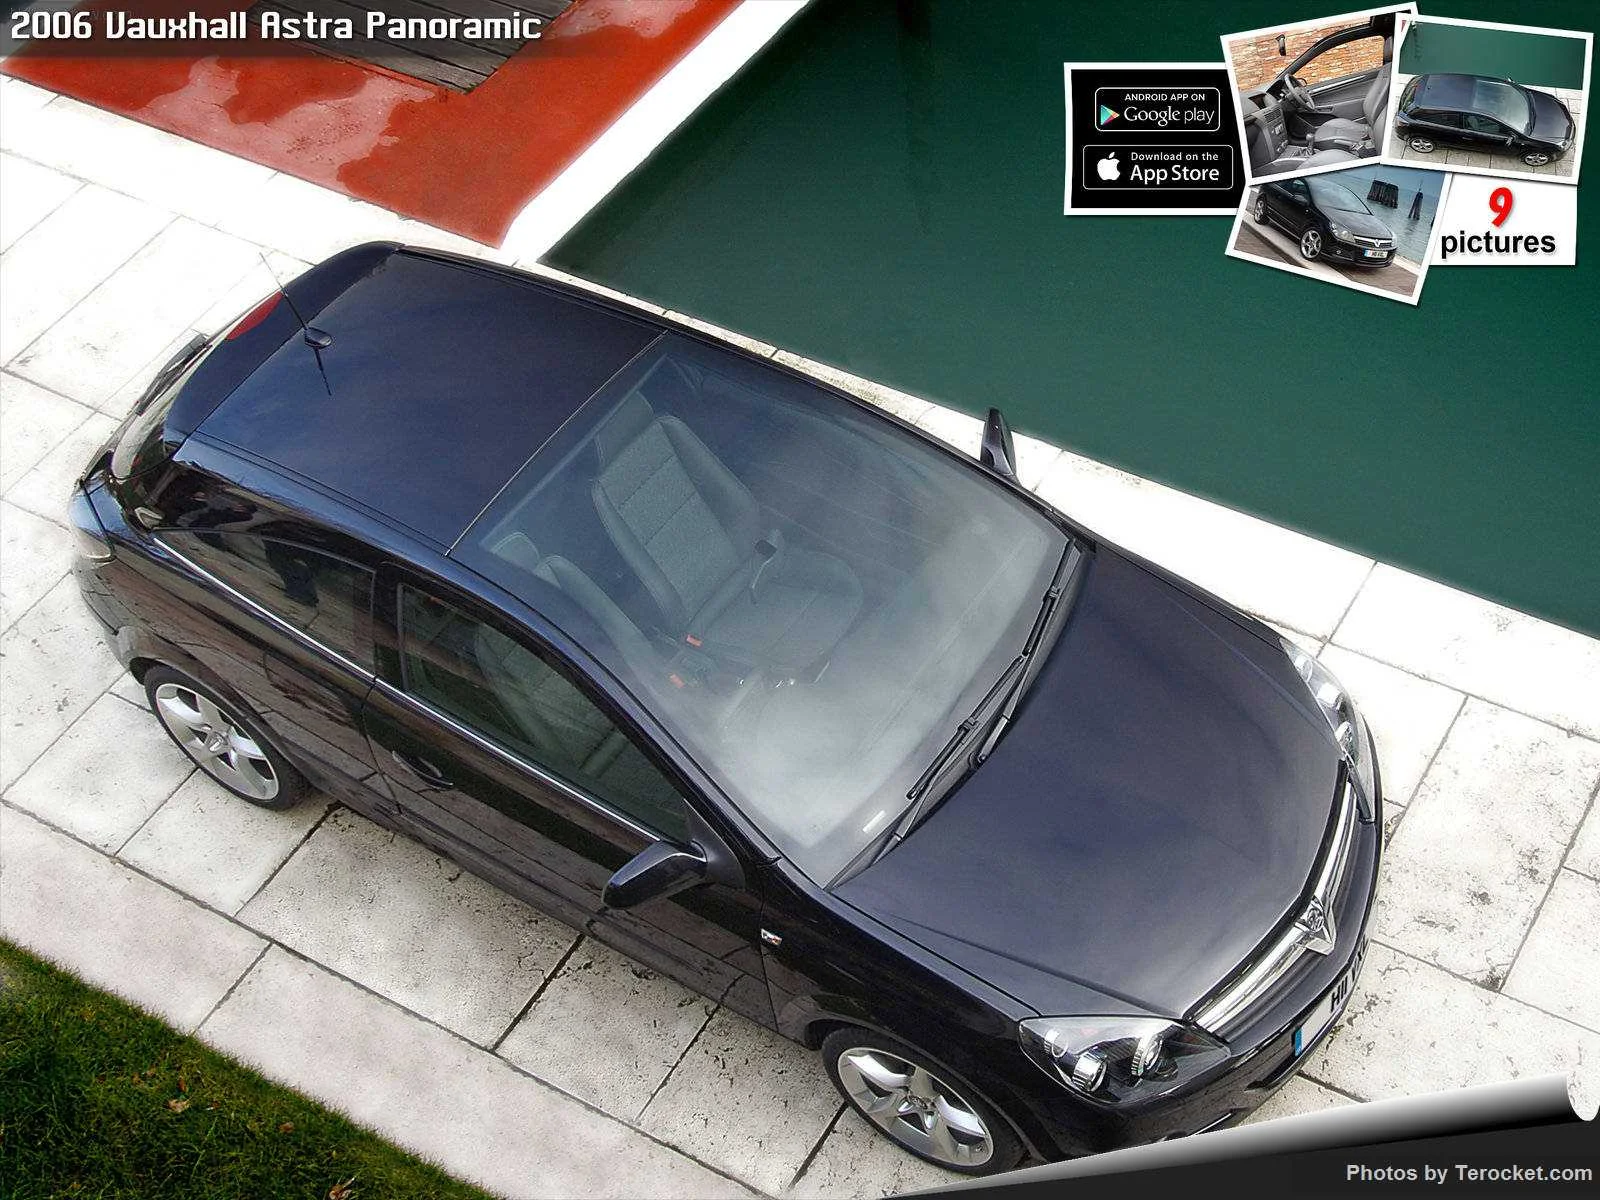 Hình ảnh xe ô tô Vauxhall Astra Panoramic 2006 & nội ngoại thất